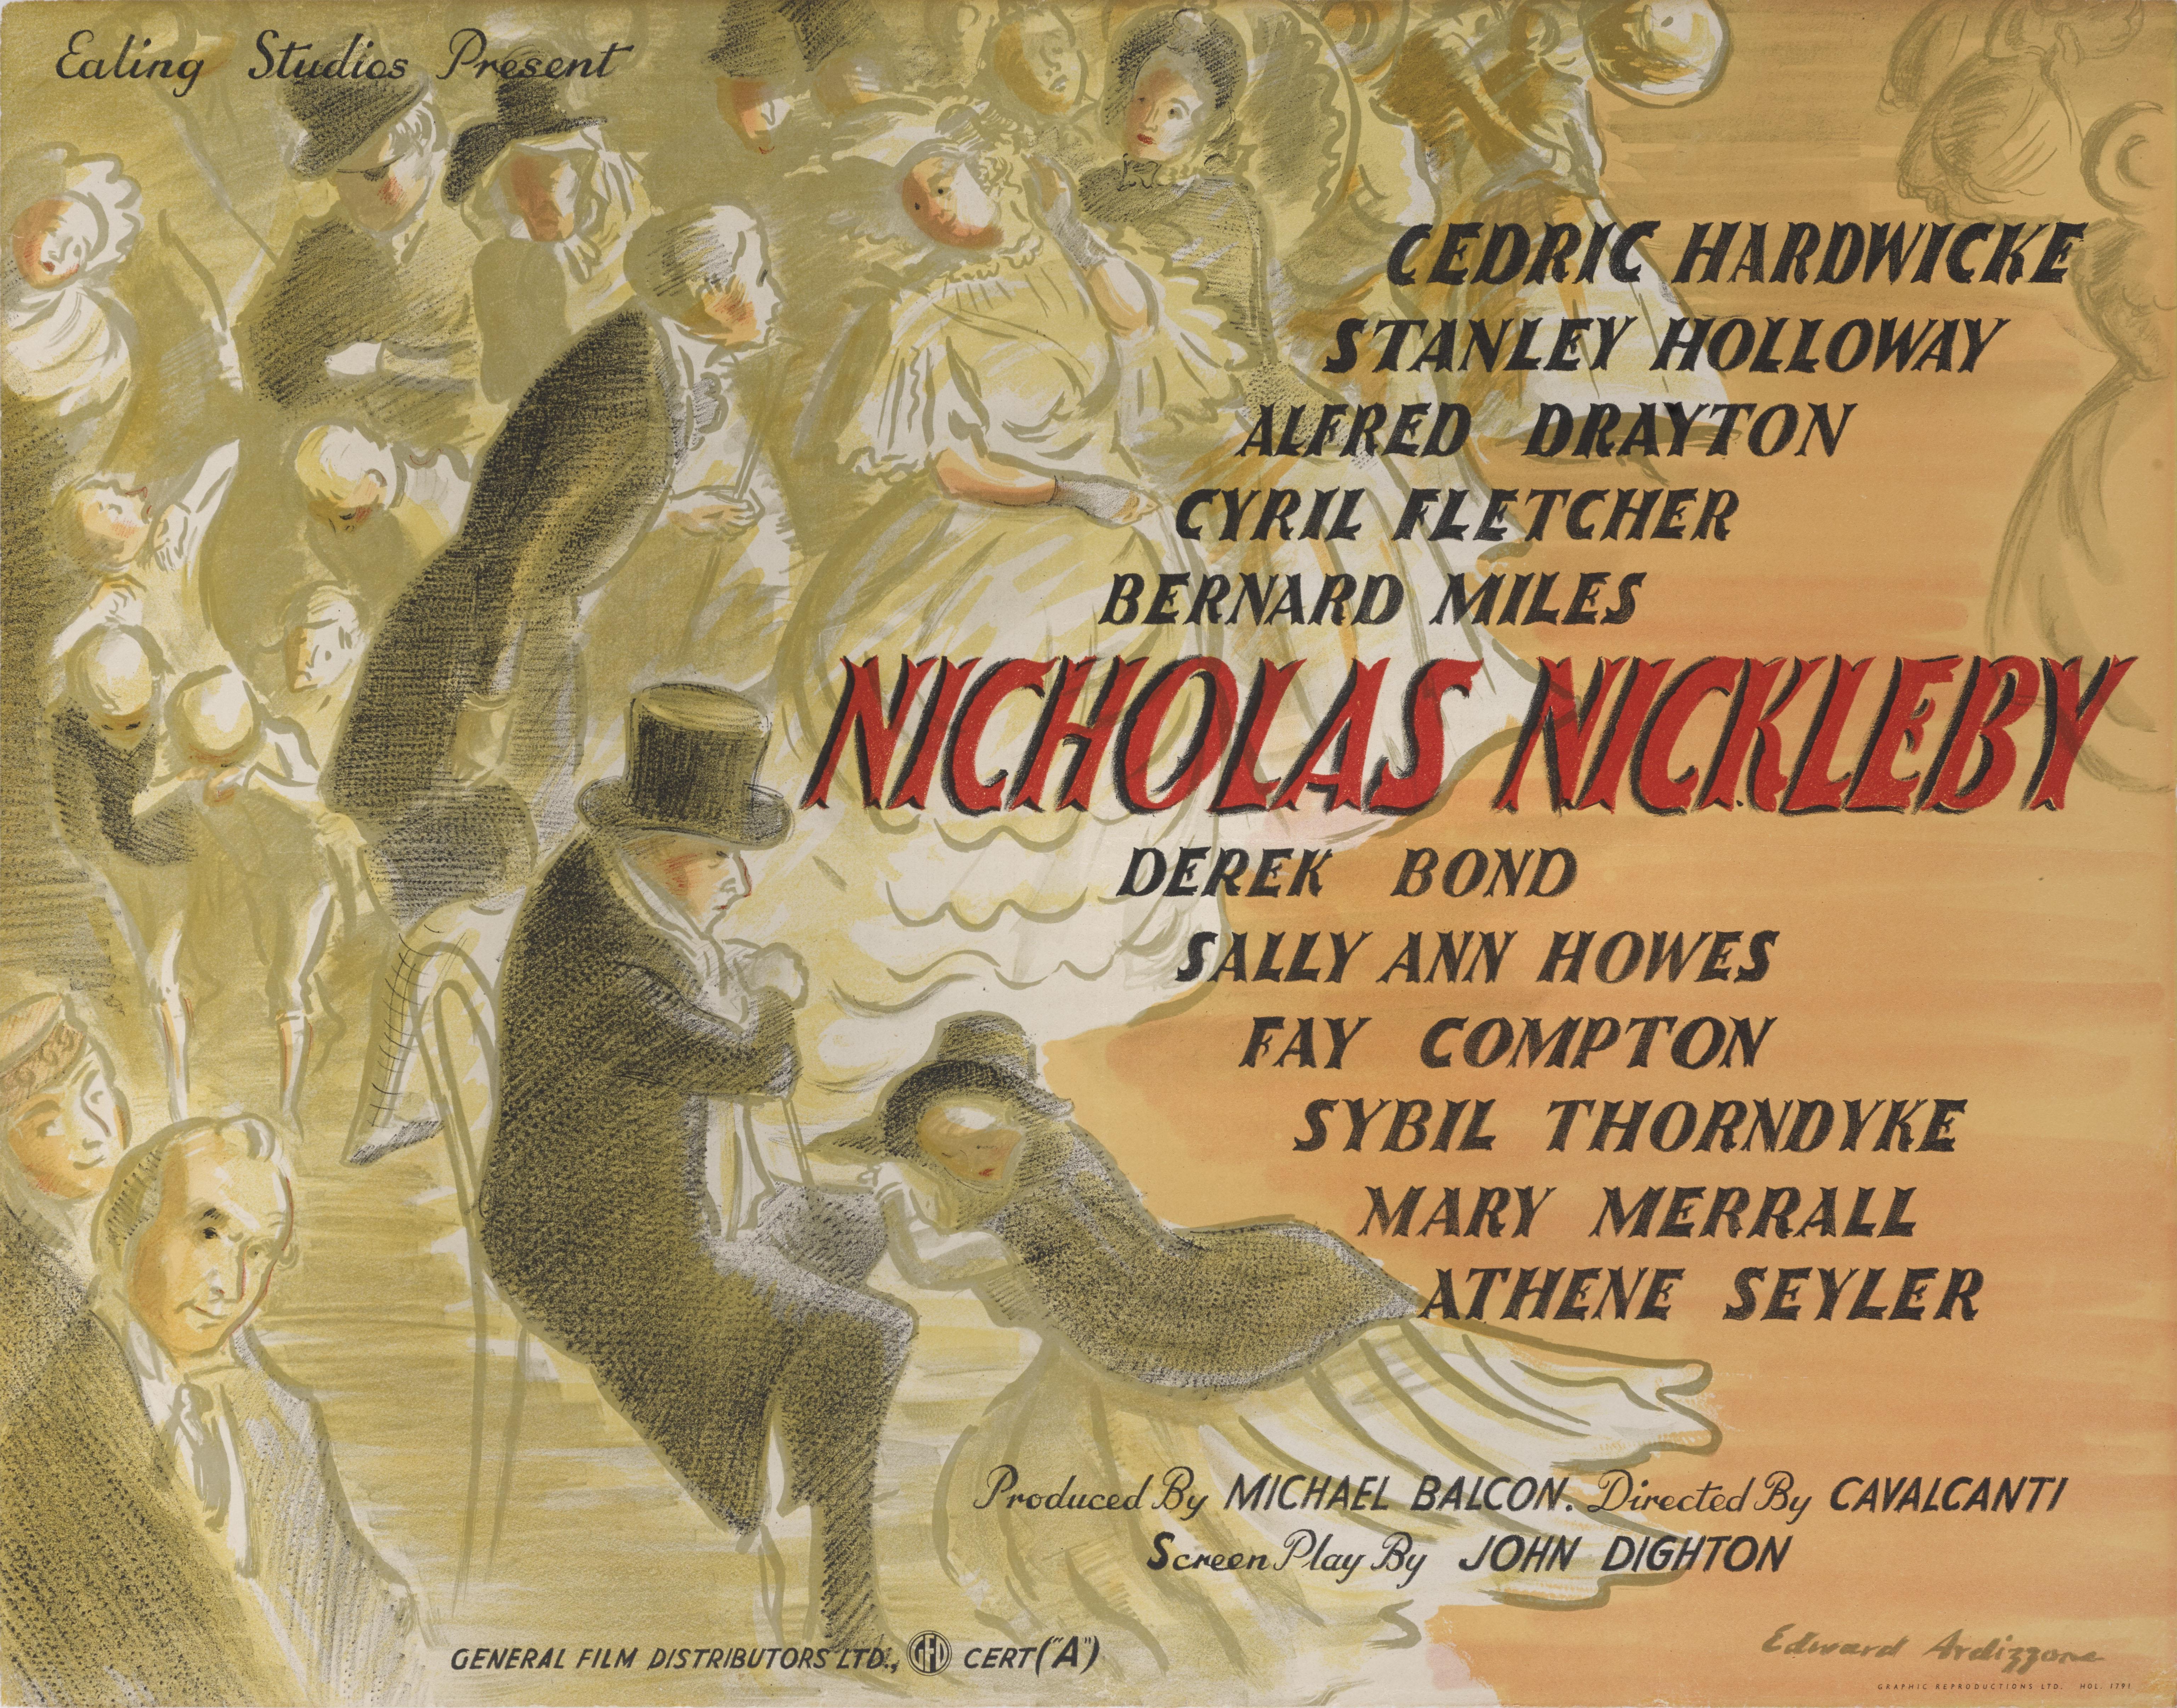 Affiche de film britannique originale pour le film The Life and Adventures of Nicholas Nickleby (1947).
Ce drame britannique a été réalisé par Alberto Cavalcanti, et met en vedette Derek Bond, Cedric Hardwicke et Mary Merrall. Le scénario est basé